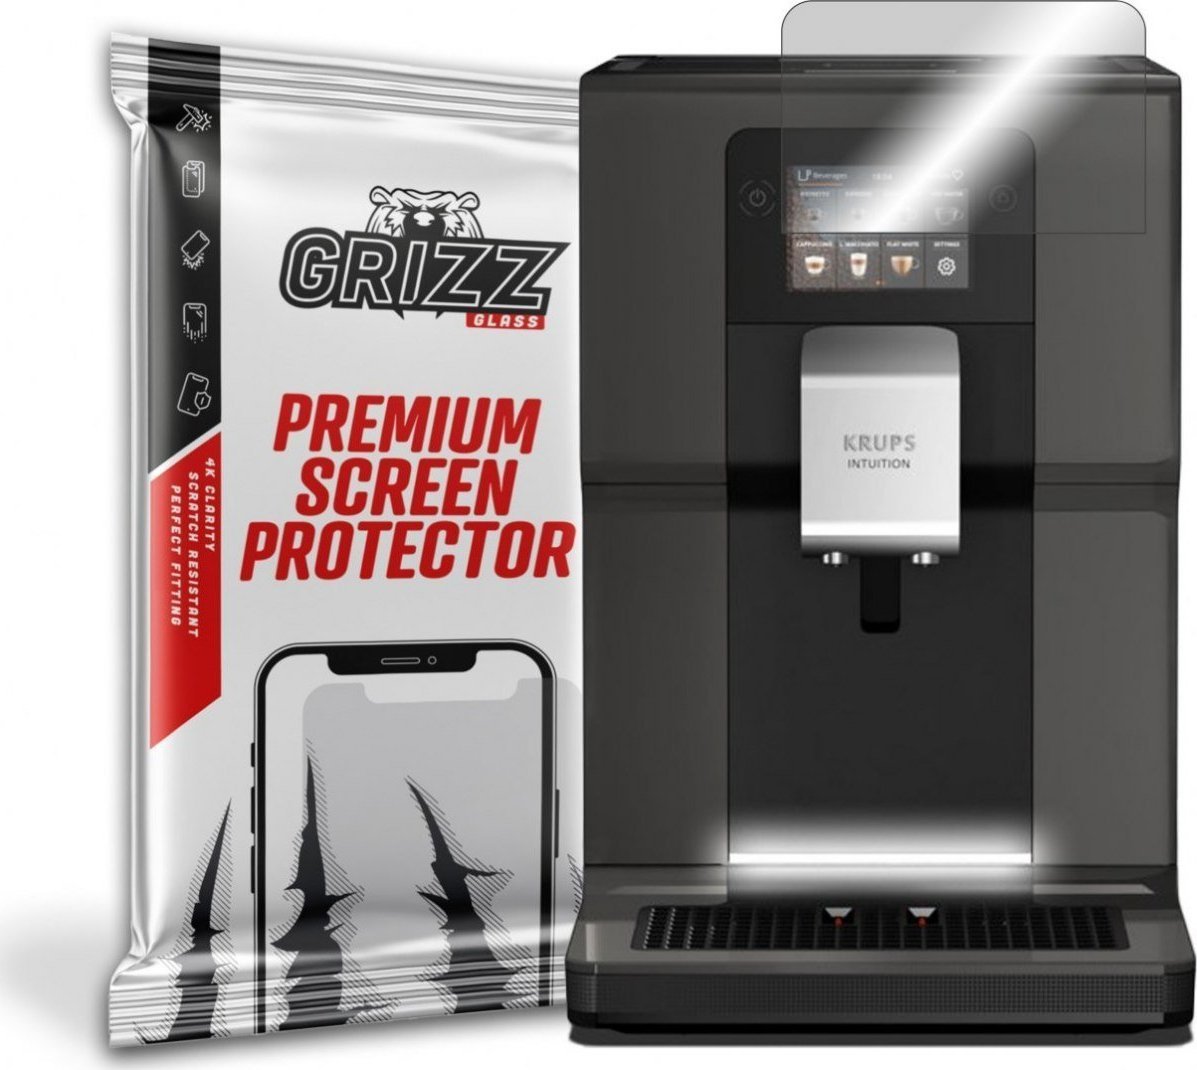 Folie protectie ecran GrizzGlass HybridGlass pentru Krups Intuition EA873810, Sticla, Transparent